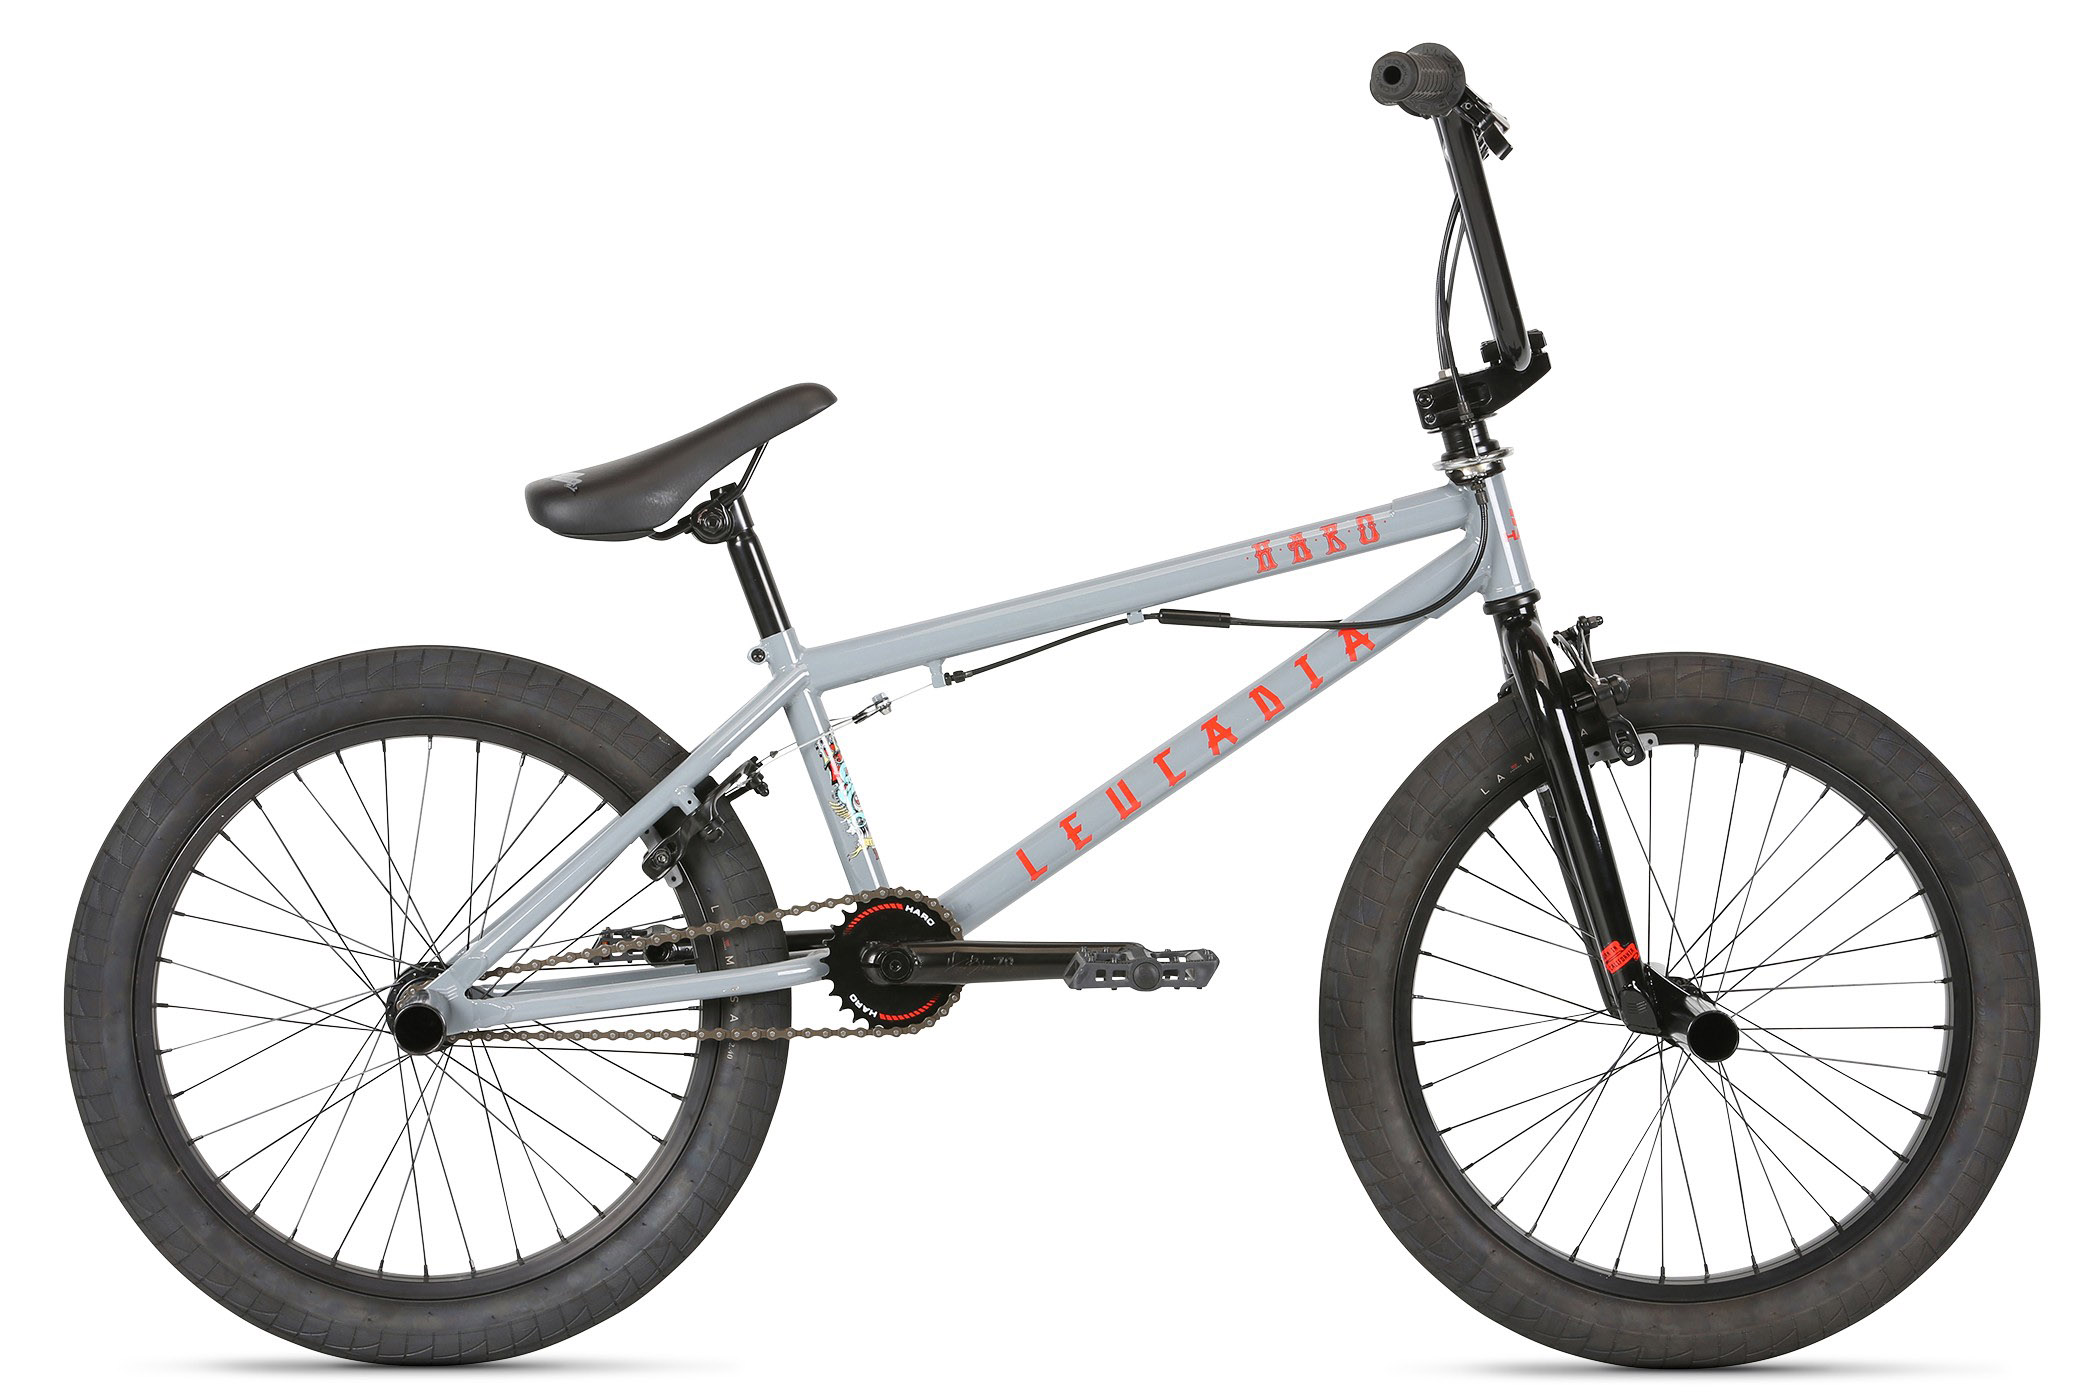  Отзывы о Велосипеде BMX Haro Leucadia DLX (2021) 2021